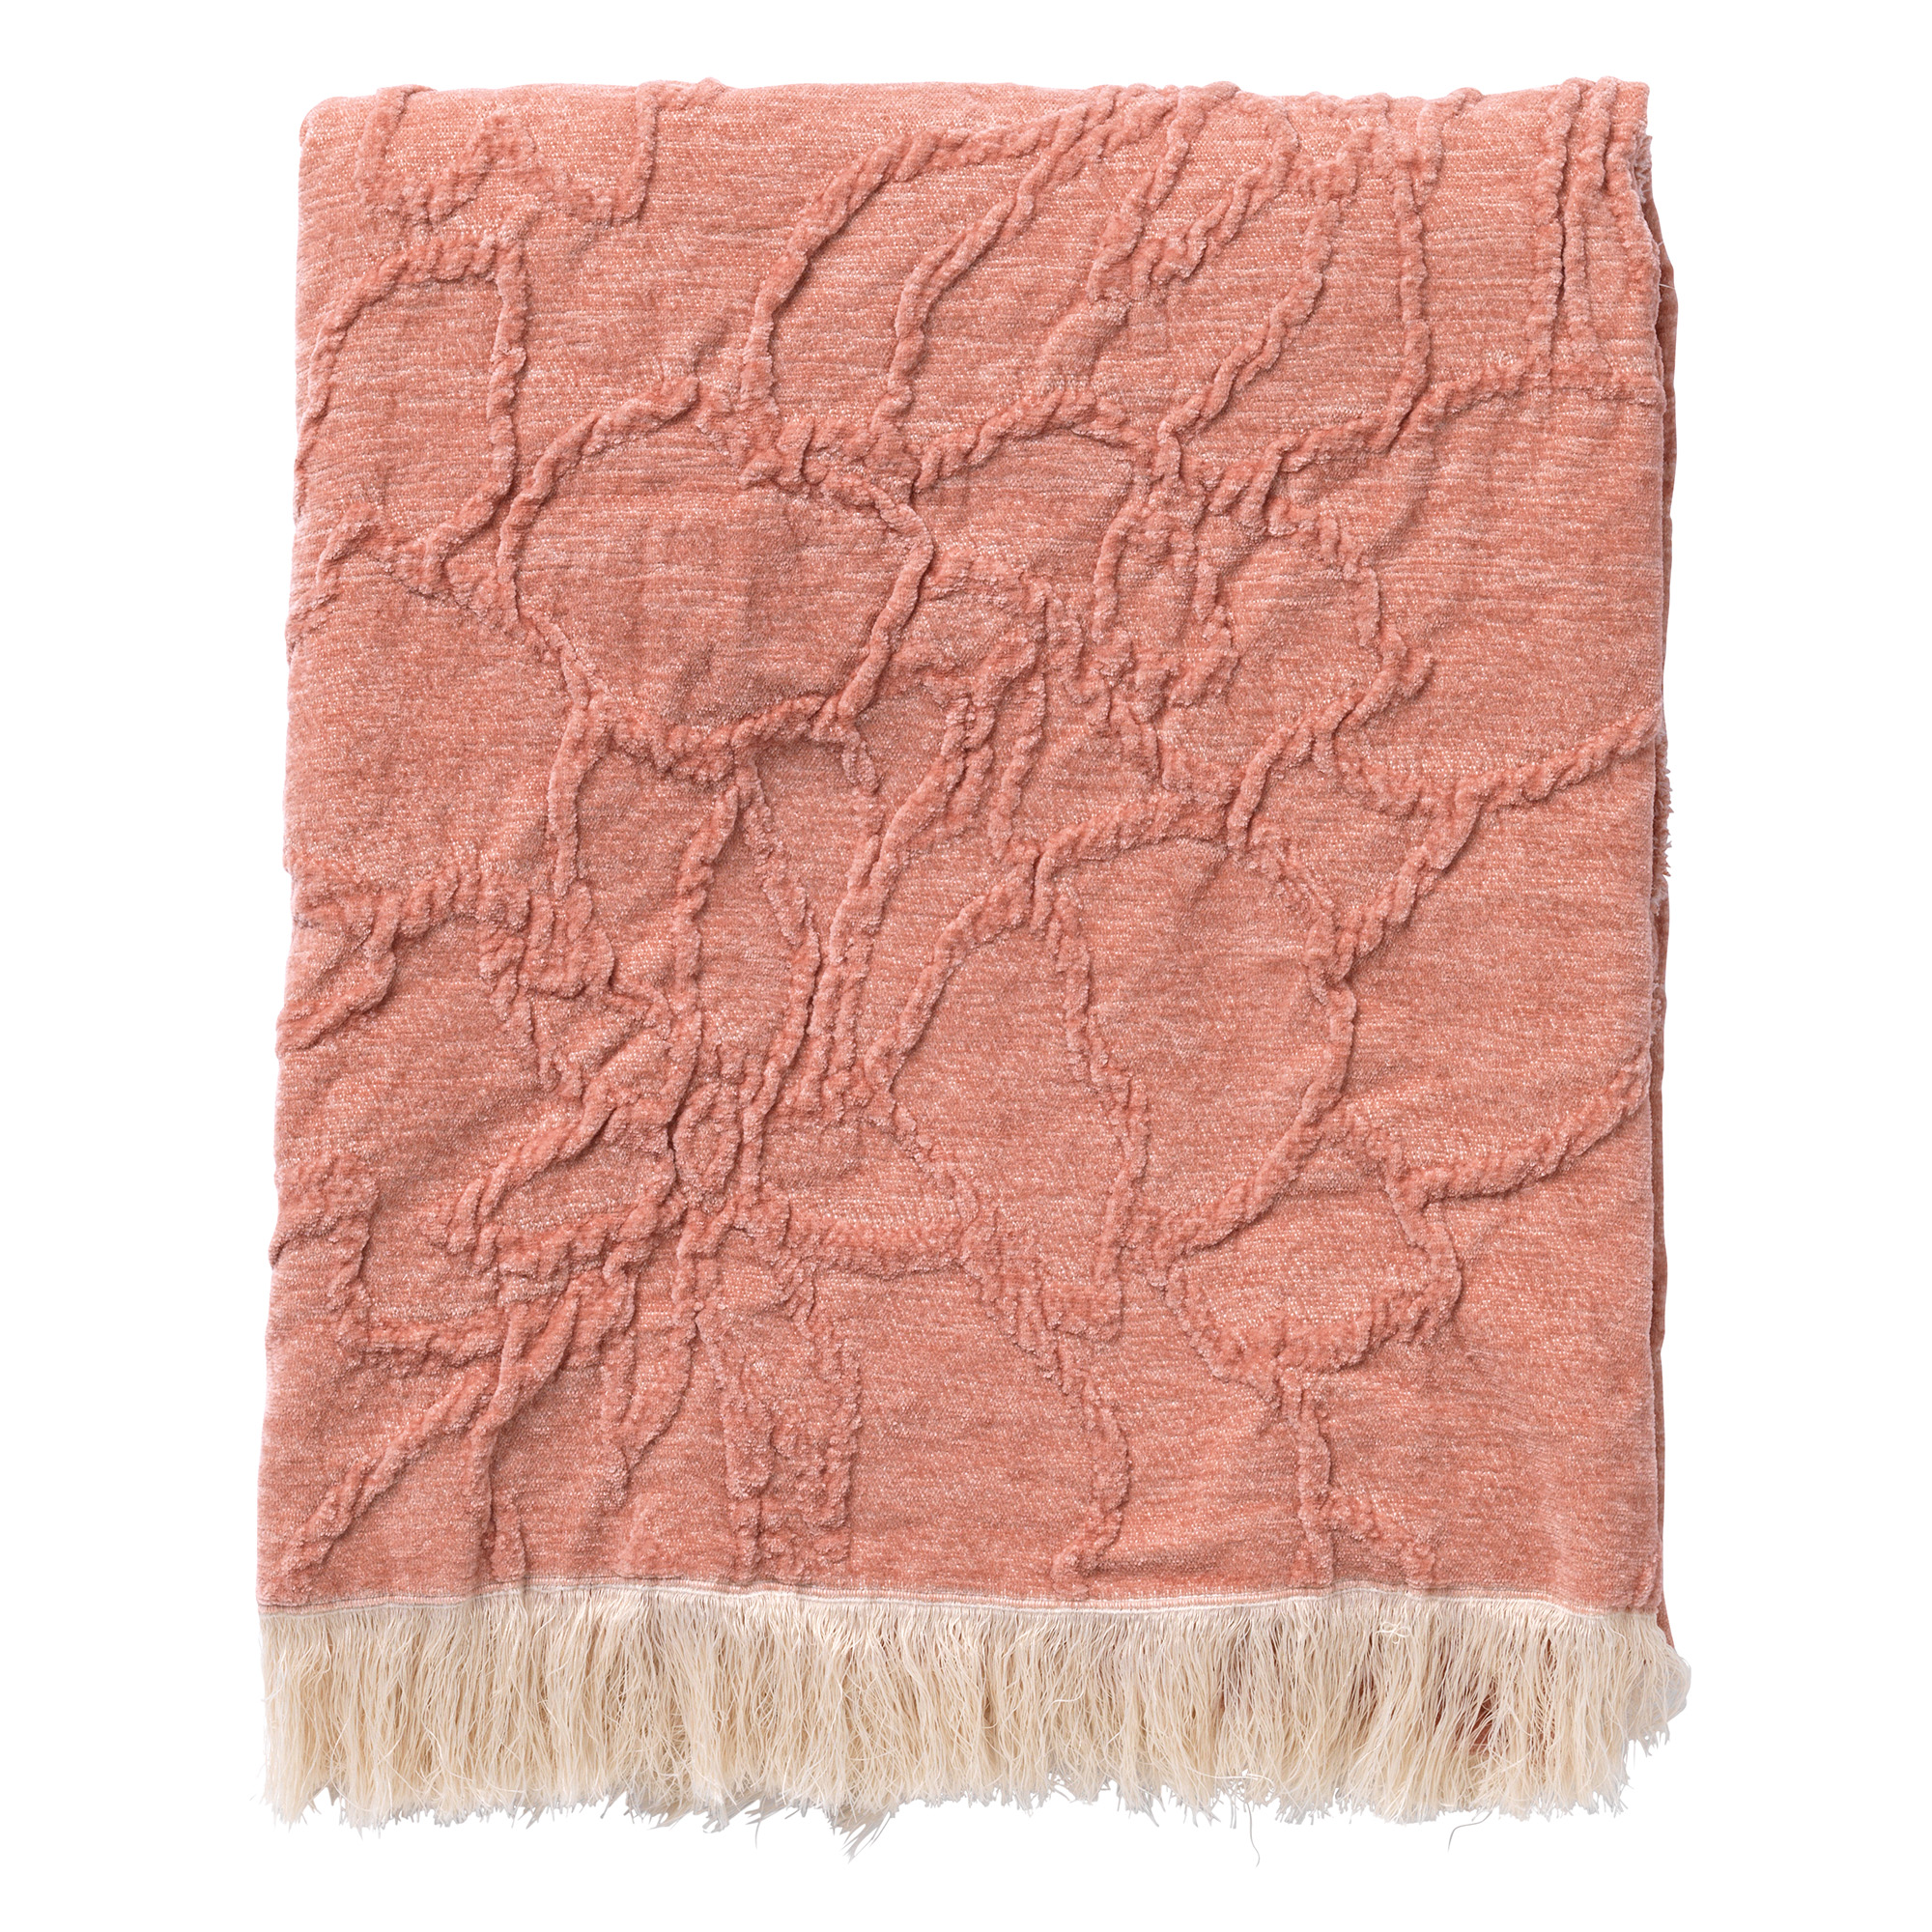 FLORINE - Plaid 140x180 cm - met ingeweven patroon - effen kleur met franjes - Muted Clay - roze